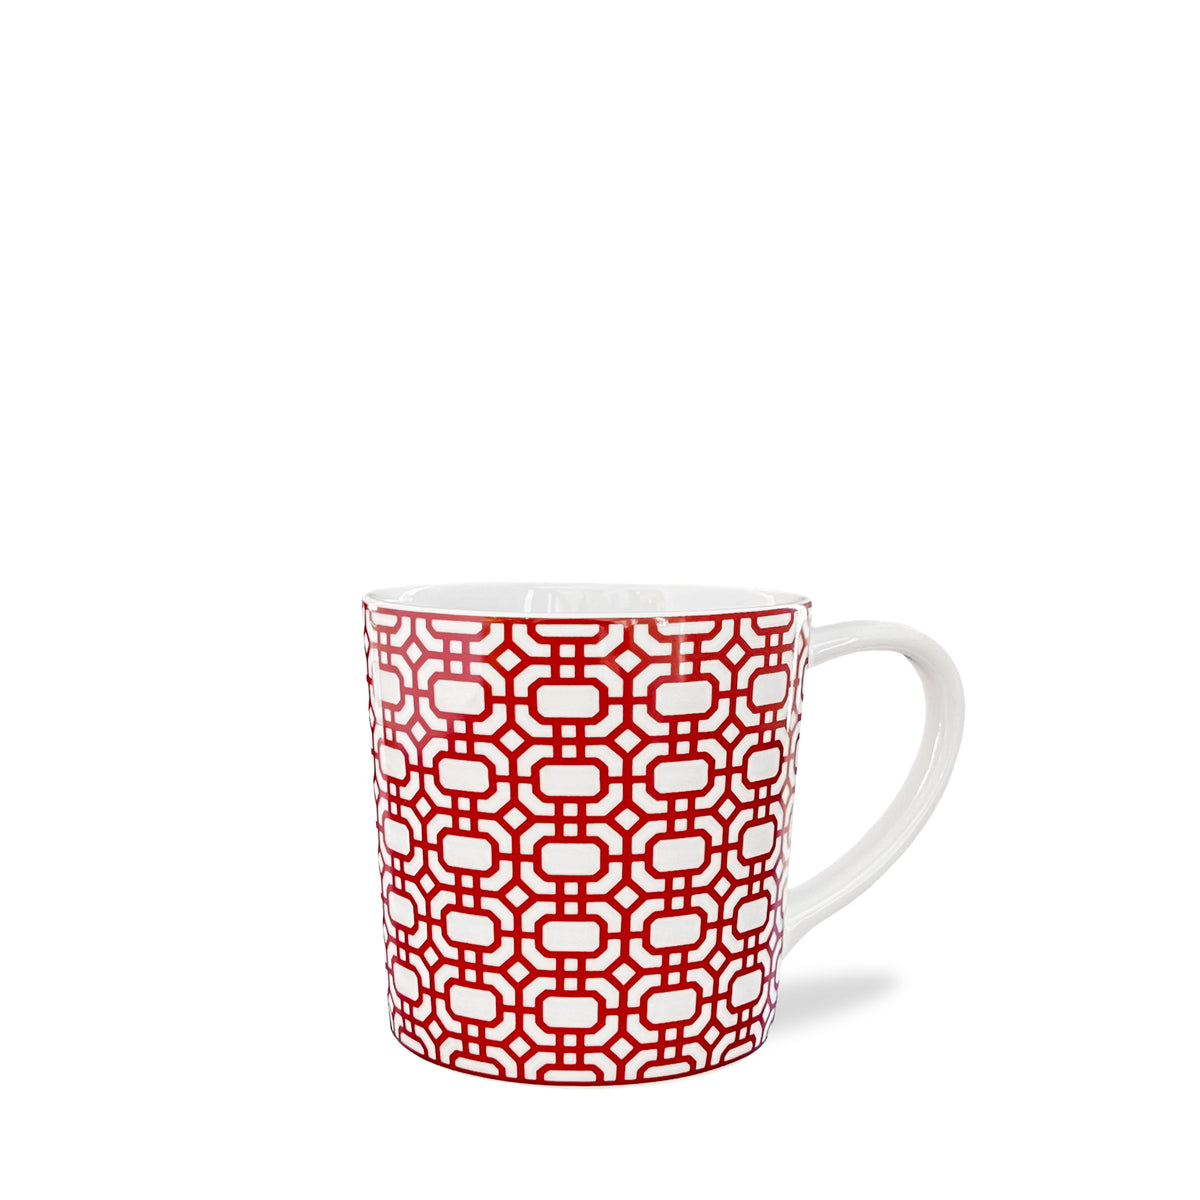 Newport Garden Gate Crimson Mug in Red and White Porcelain from Caskata